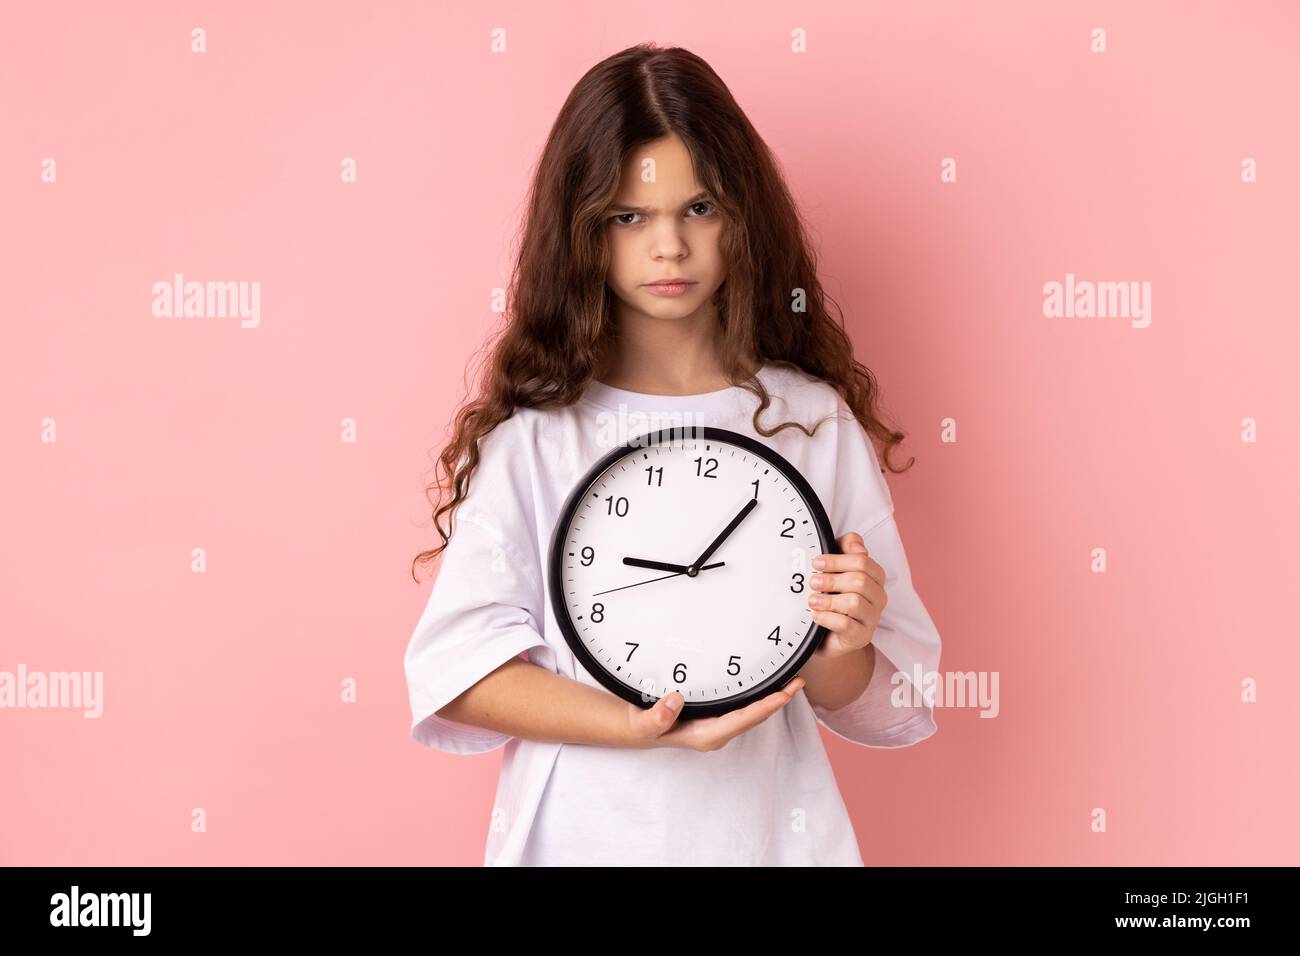 Porträt eines kleinen Mädchens in weißem T-Shirt mit Wanduhr, unglücklich, Deadline, traurig, nicht rechtzeitig fertig gestellt. Innenaufnahme des Studios isoliert auf rosa Hintergrund. Stockfoto